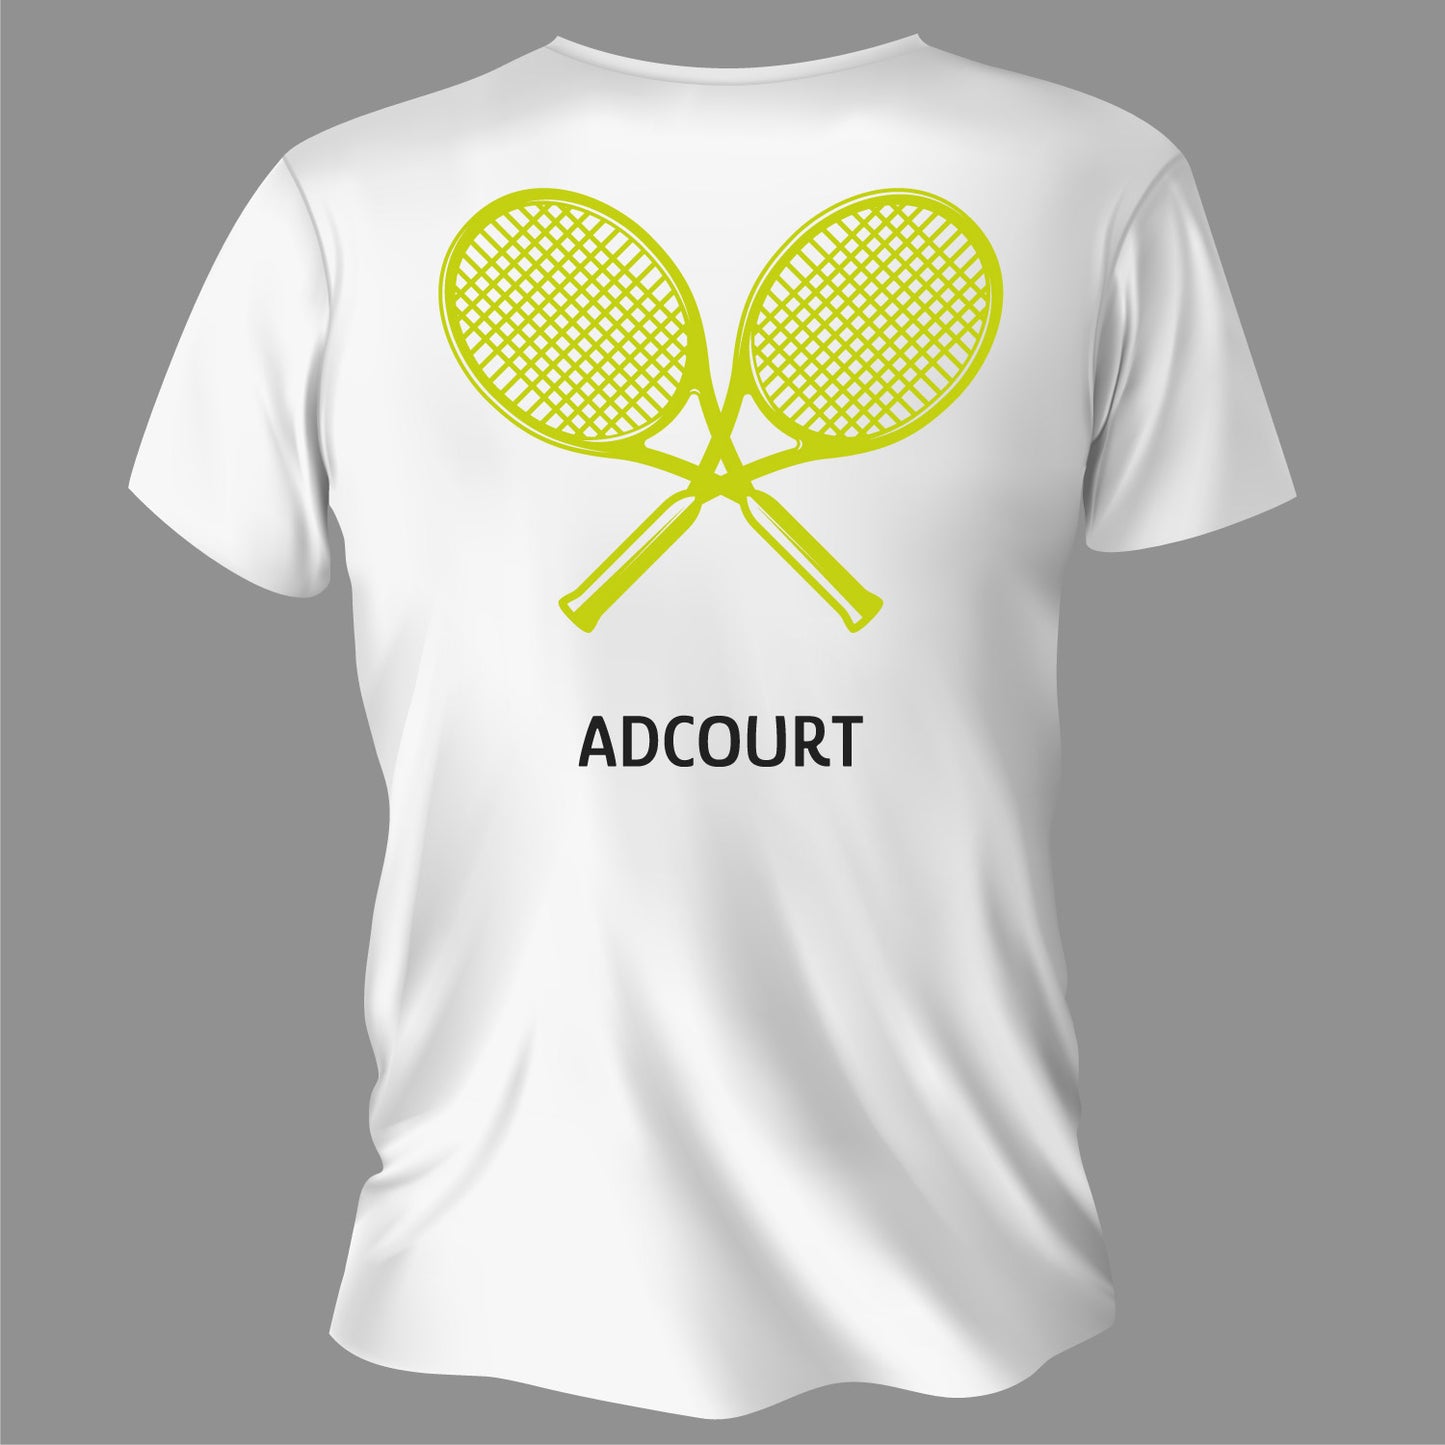 ADCOURT Kids T-Shirt "crossing rackets"